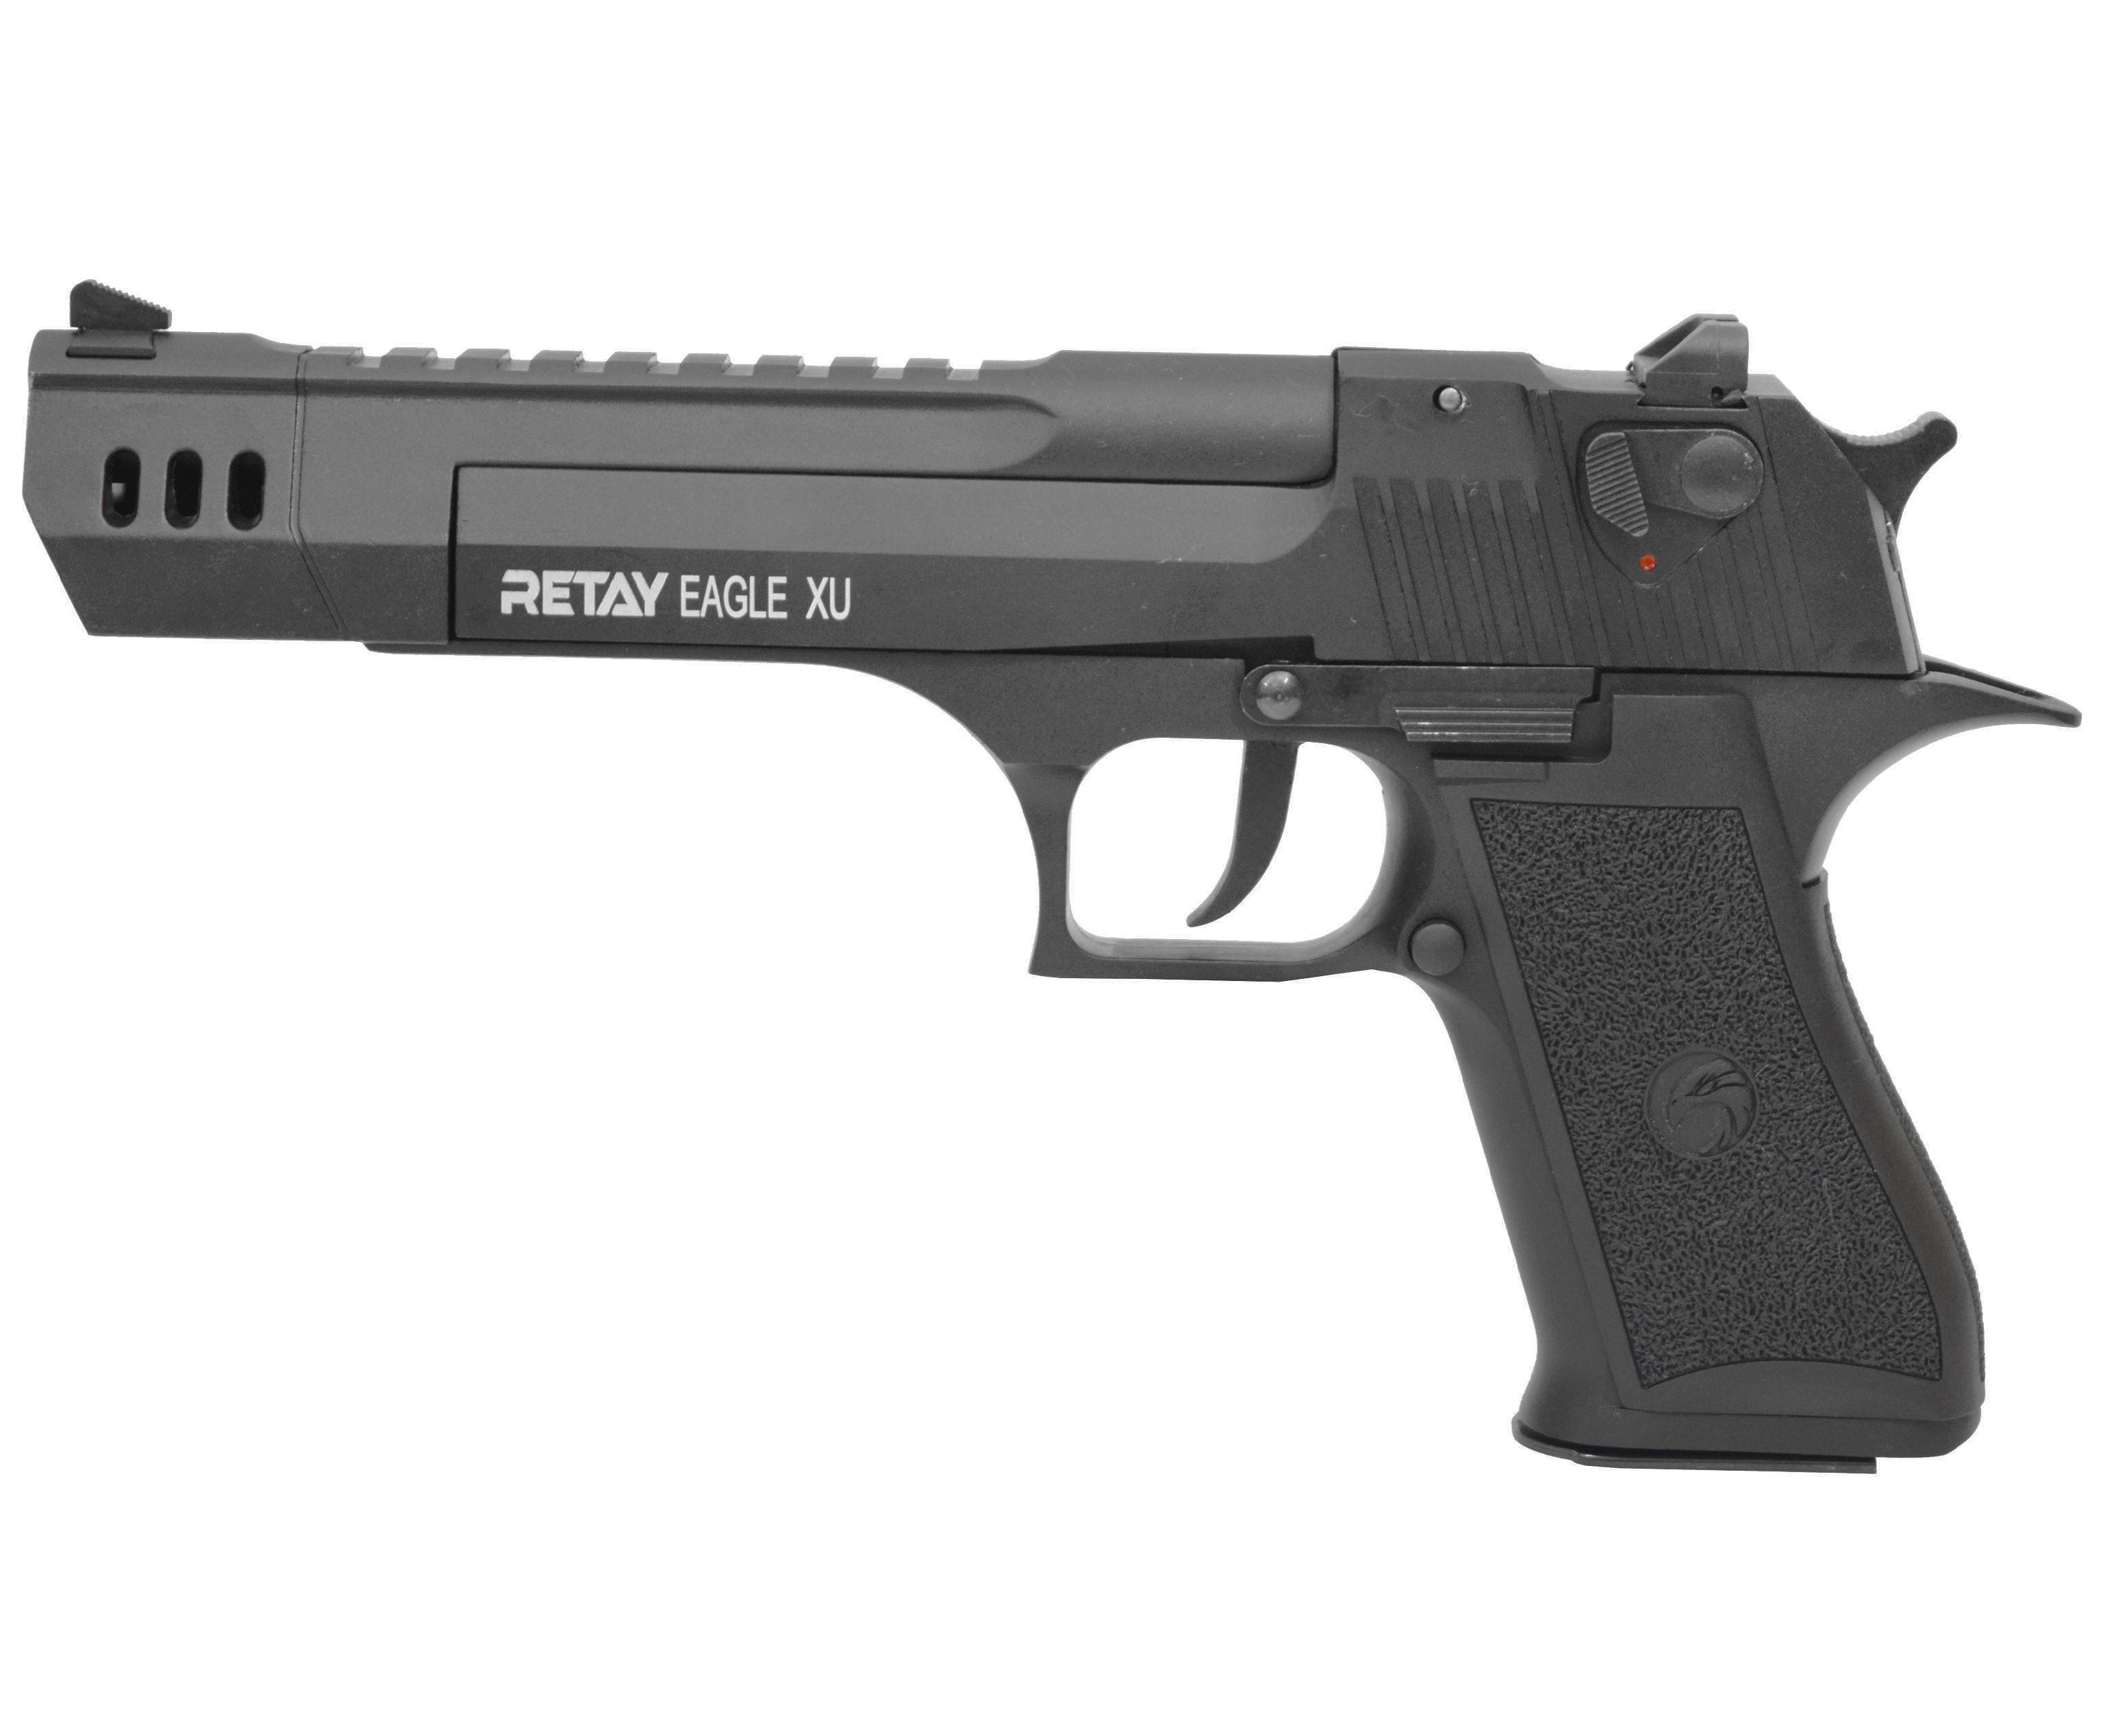  Охолощенный пистолет Retay Eagle XU (Черный, 9 РАК)